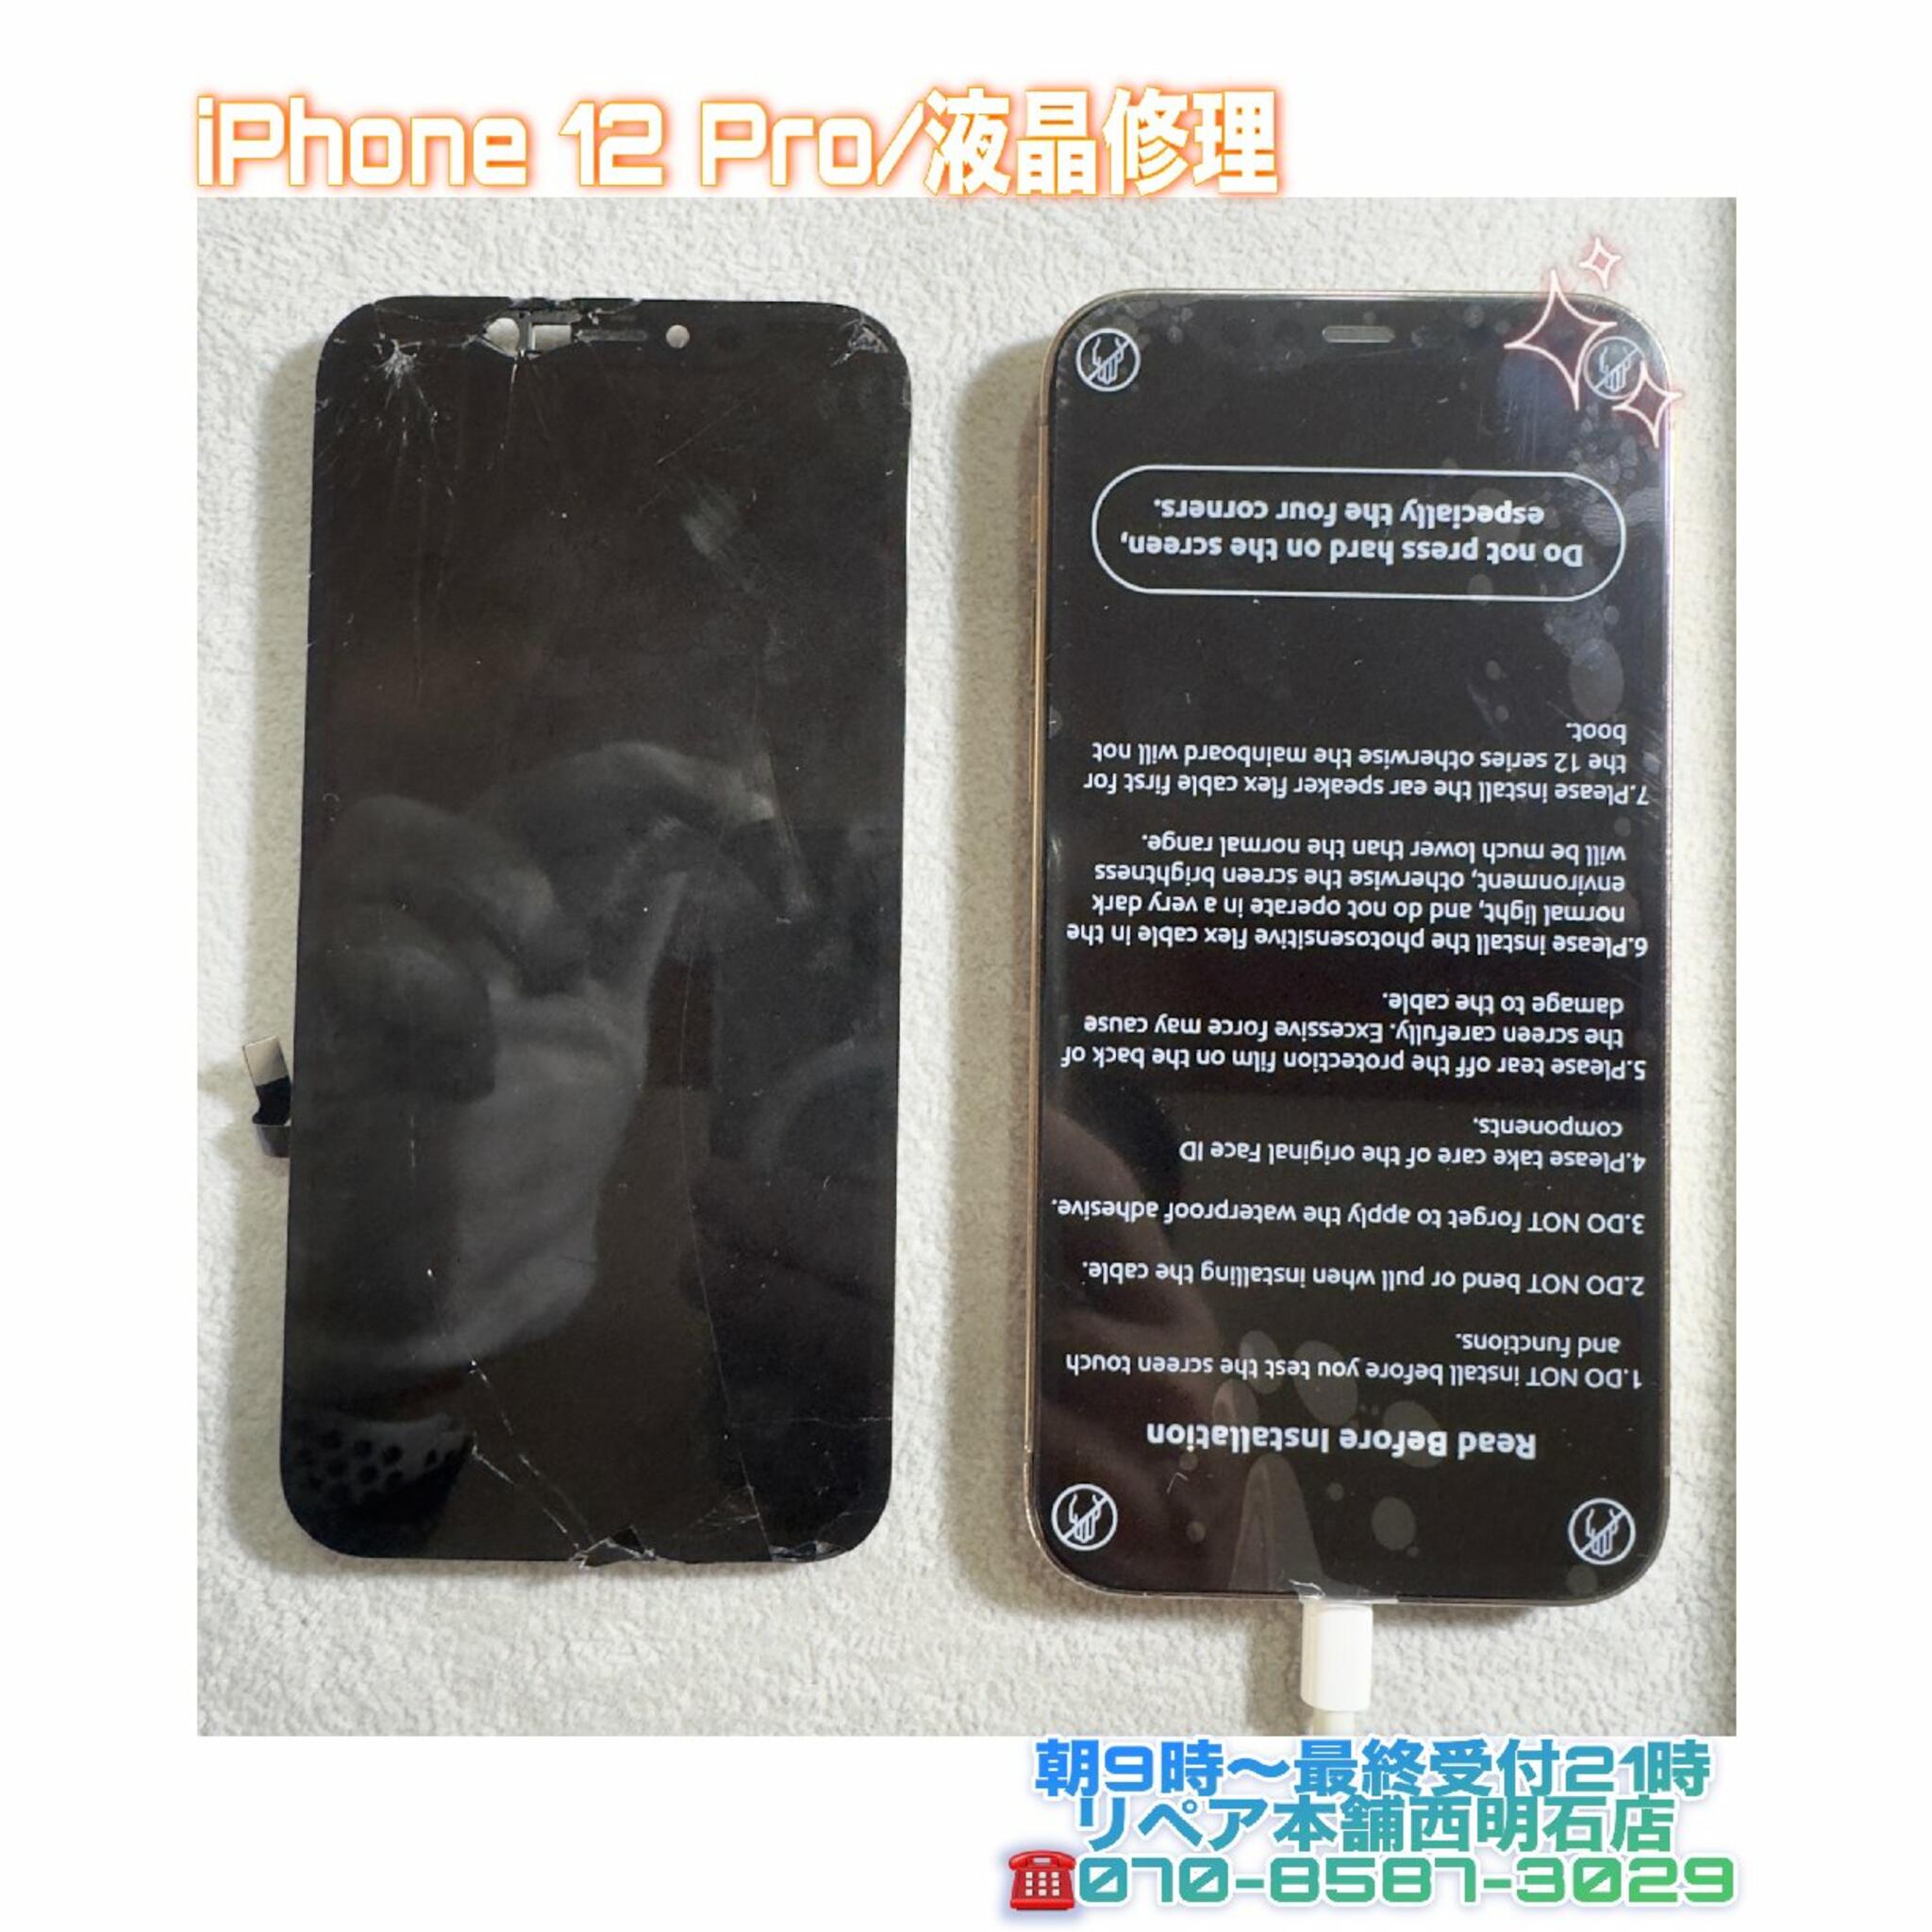 iPhone修理 明石 リペア本舗 西明石店からのお知らせ(💡神戸市西区の方より、iPhone 12液晶不良にてご来店頂きました😲)に関する写真